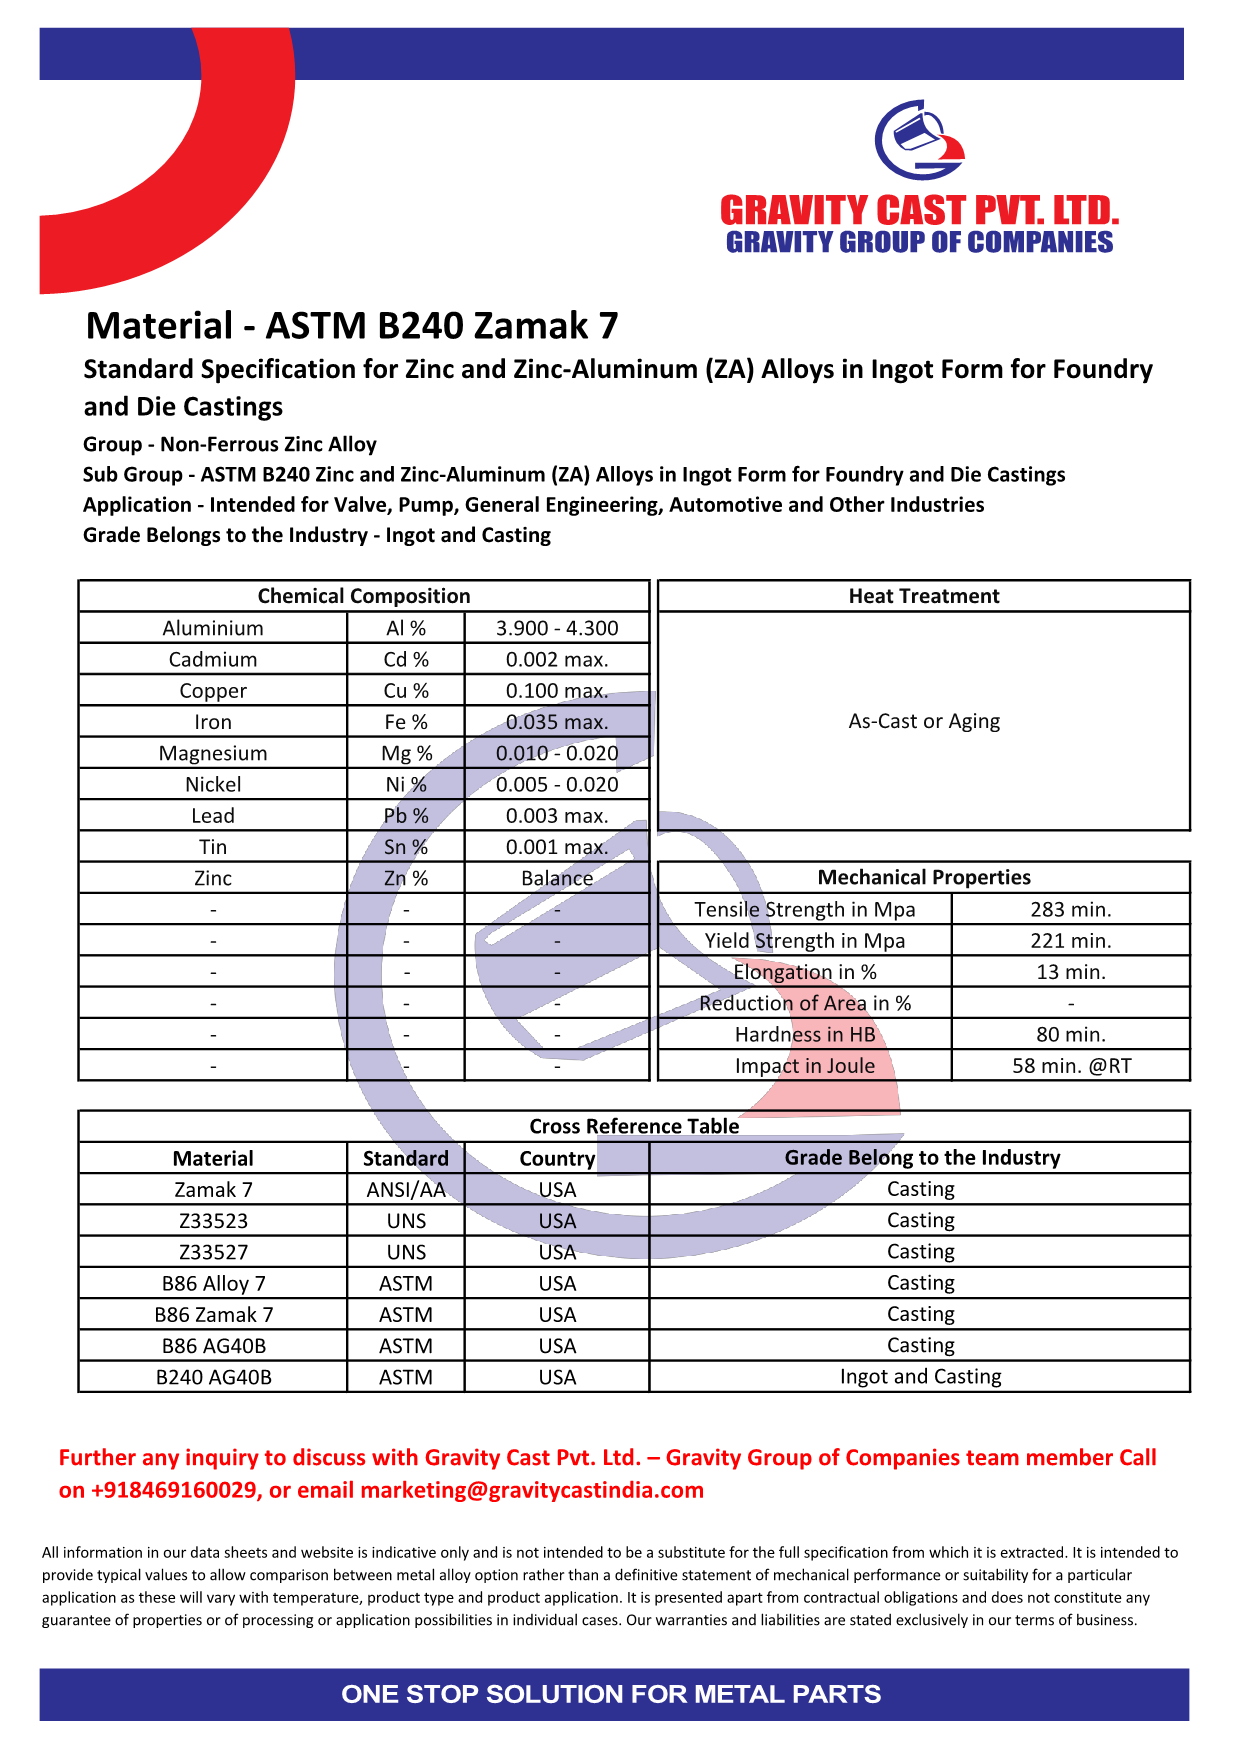 ASTM B240 Zamak 7.pdf